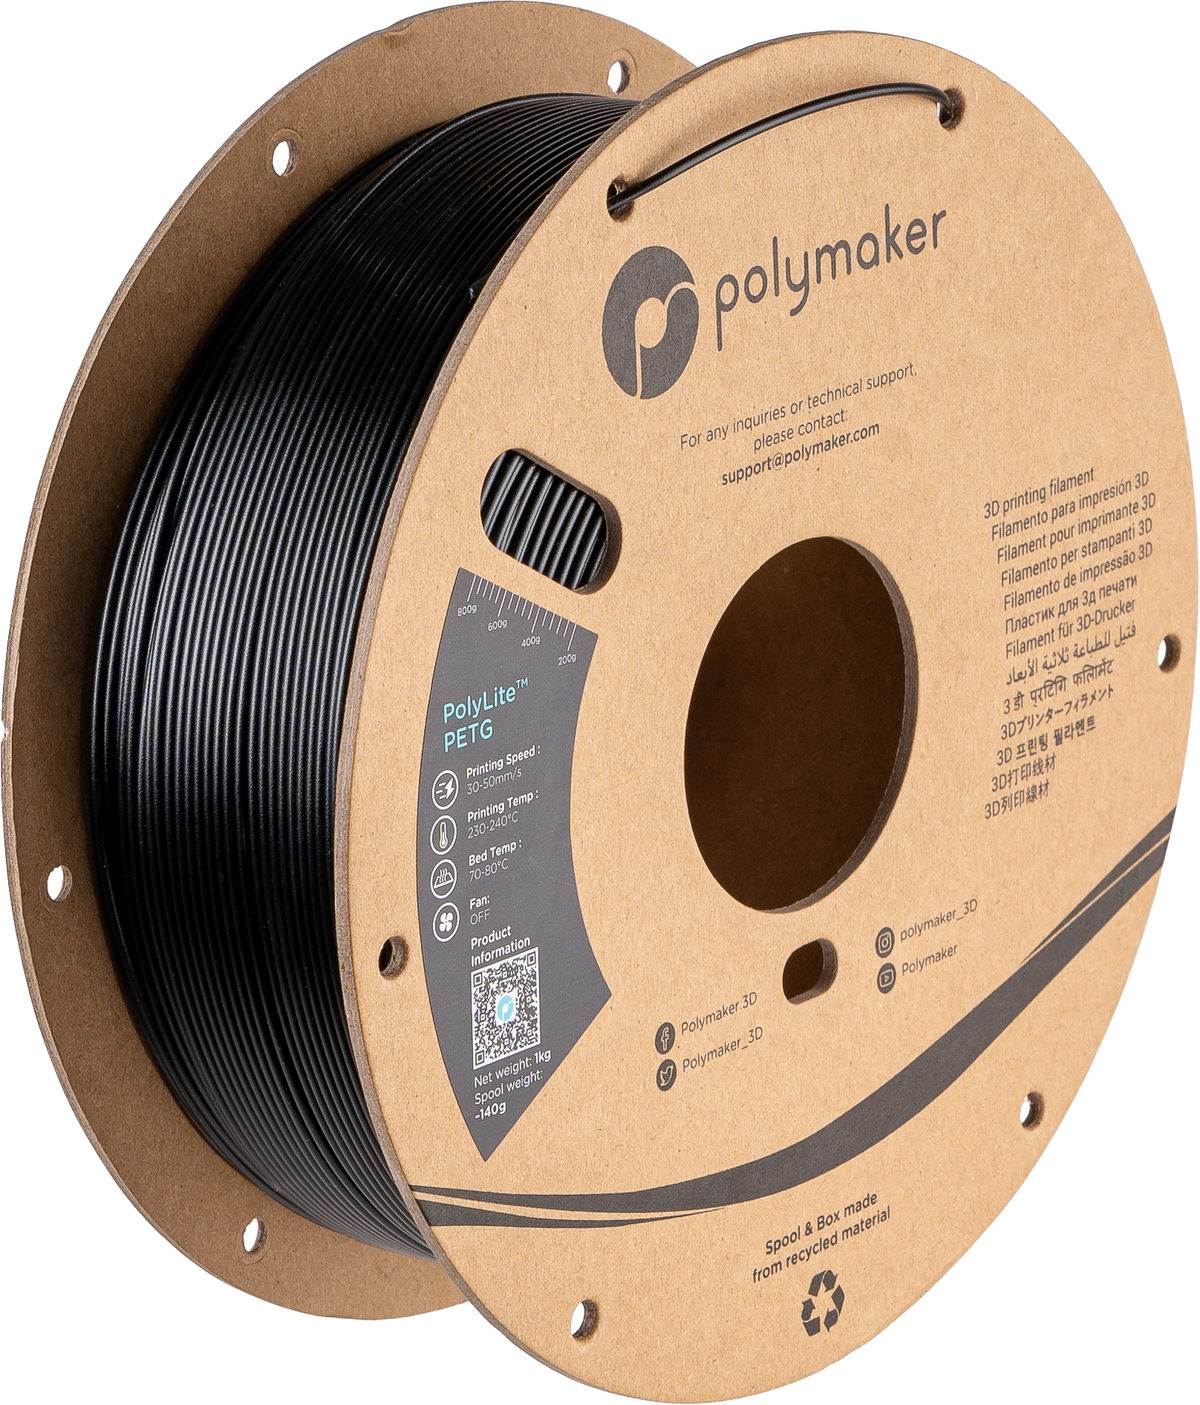 Polymaker PolyLite™ PETG - Black [1.75mm] (29,90€/Kg)